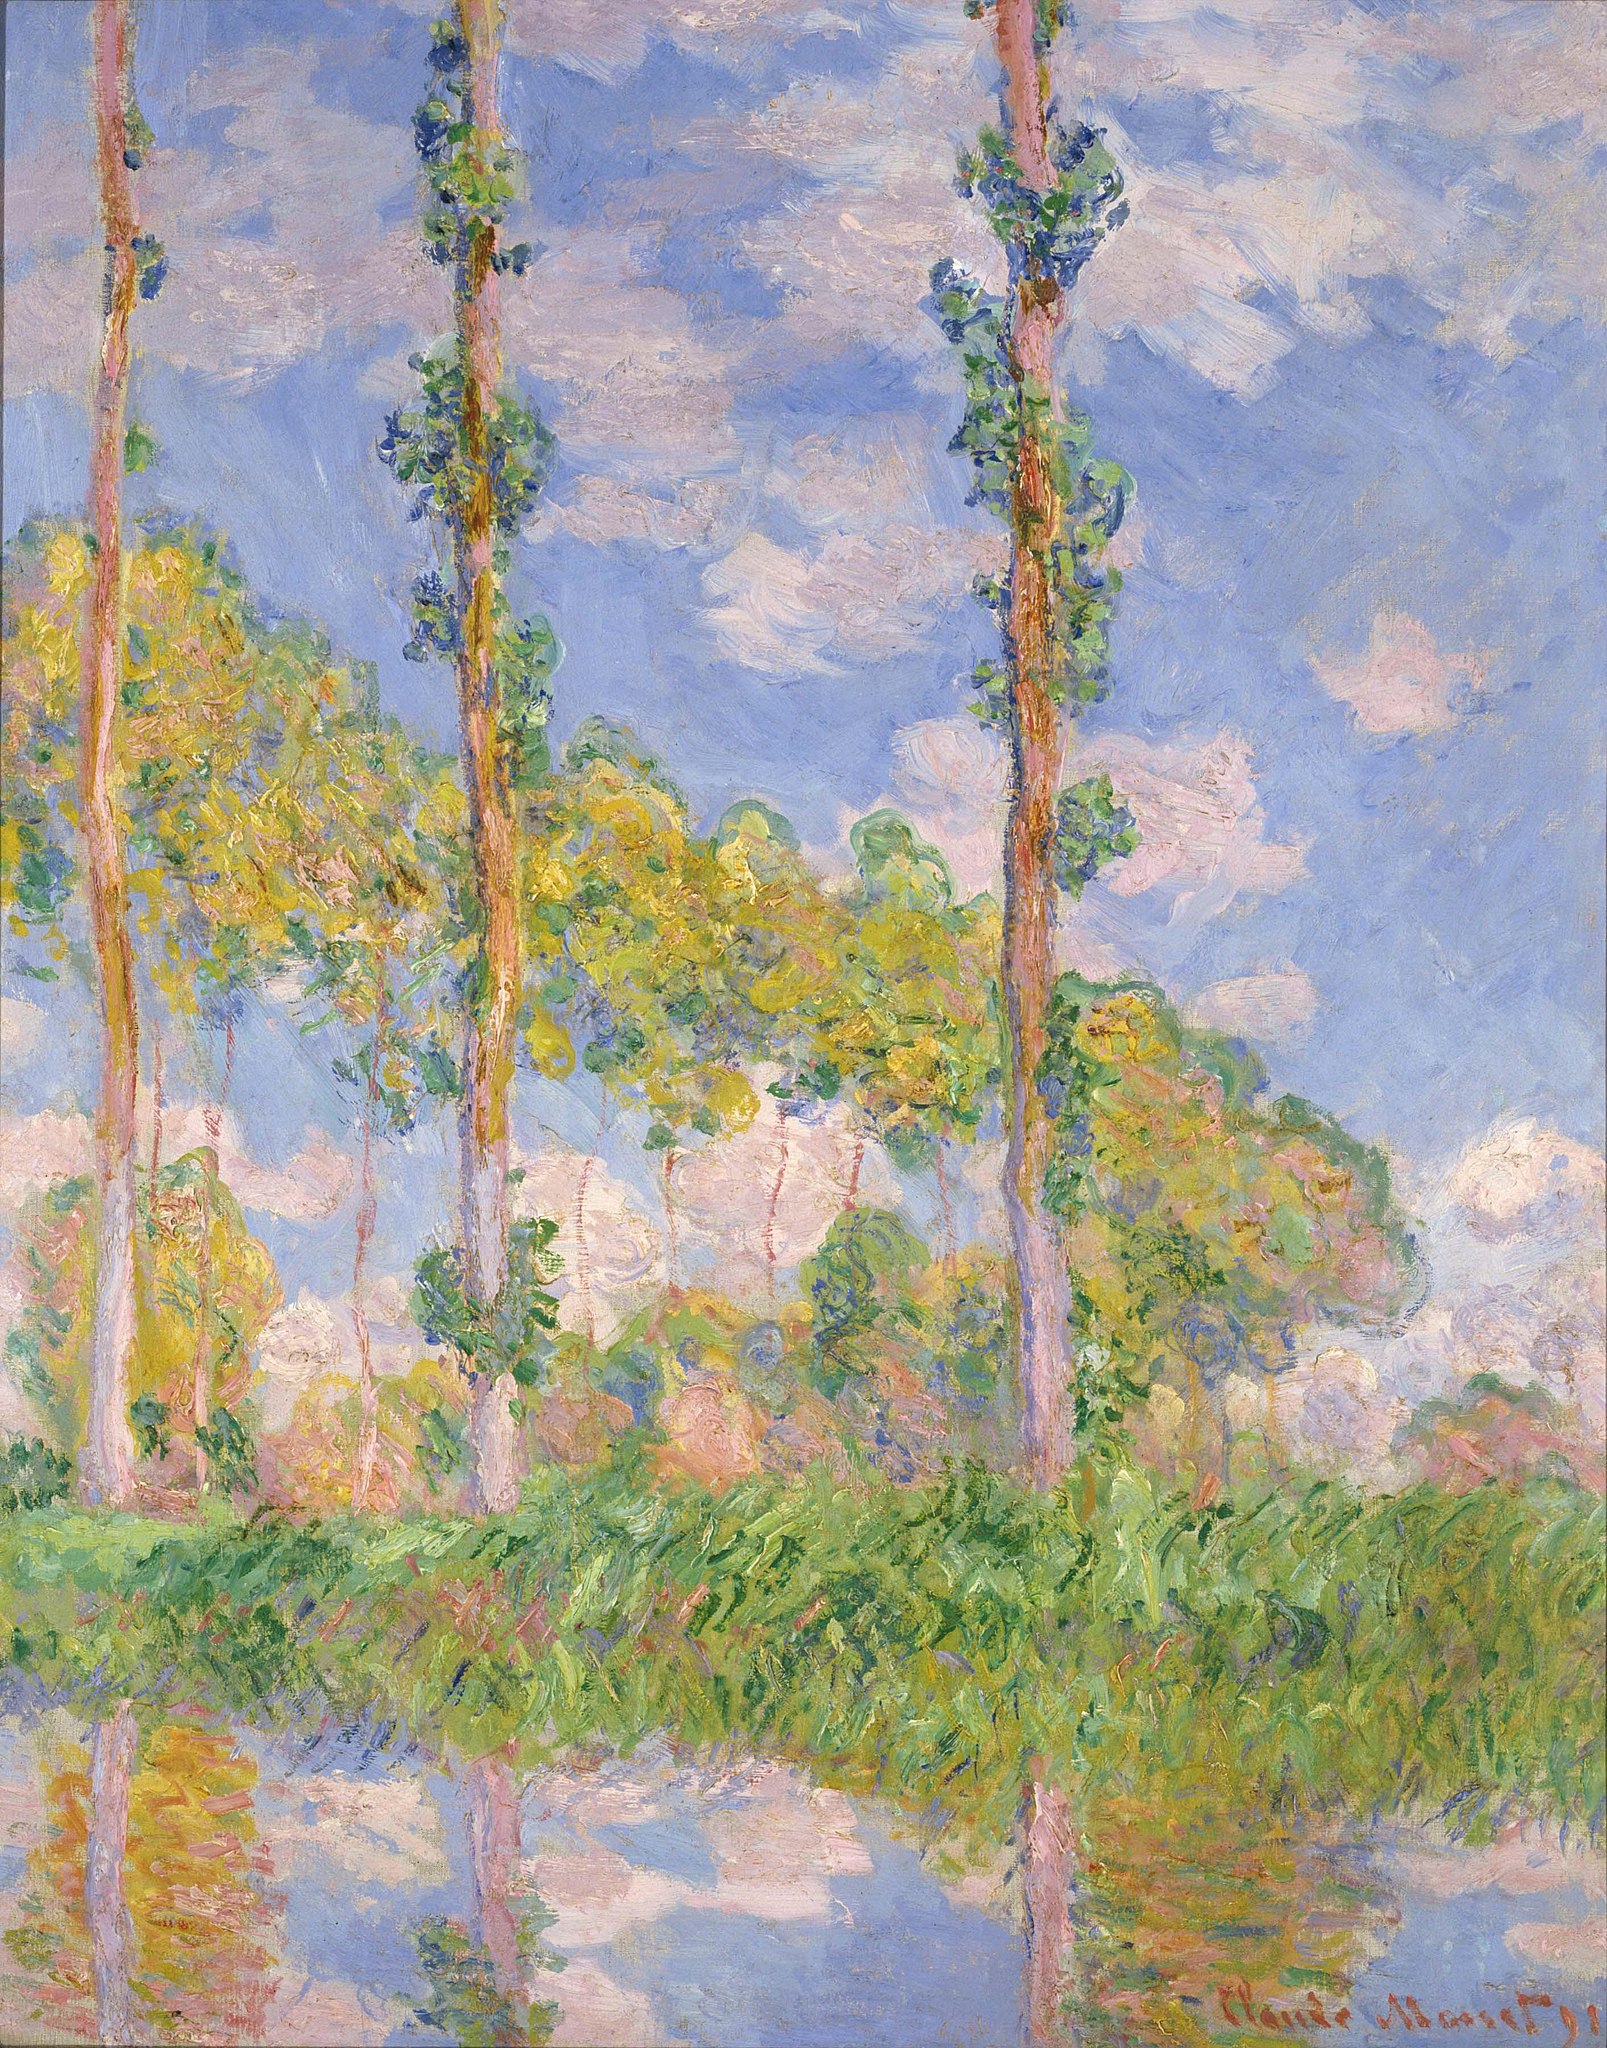 Pappeln in der Sonne by Claude Monet - 1891 - 93 x 73,5 cm Das Nationalmuseum für westliche Kunst